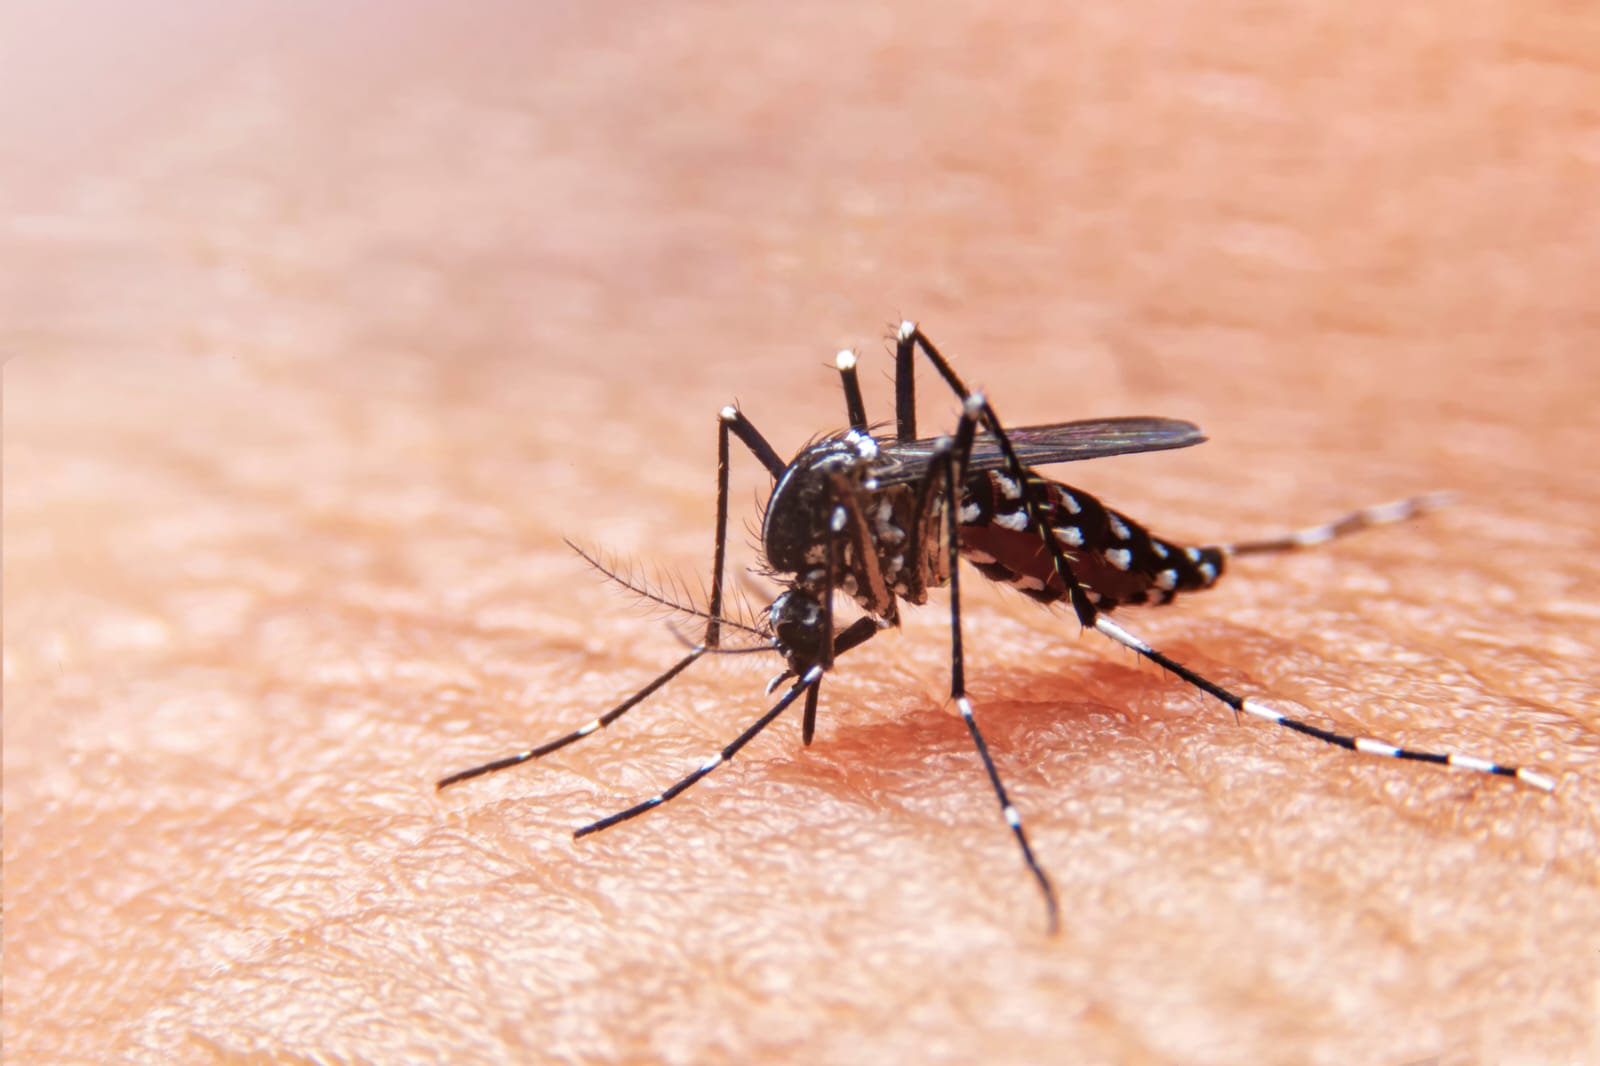 Salud: campaña de prevención contra el Dengue, Zika y Chikungunya